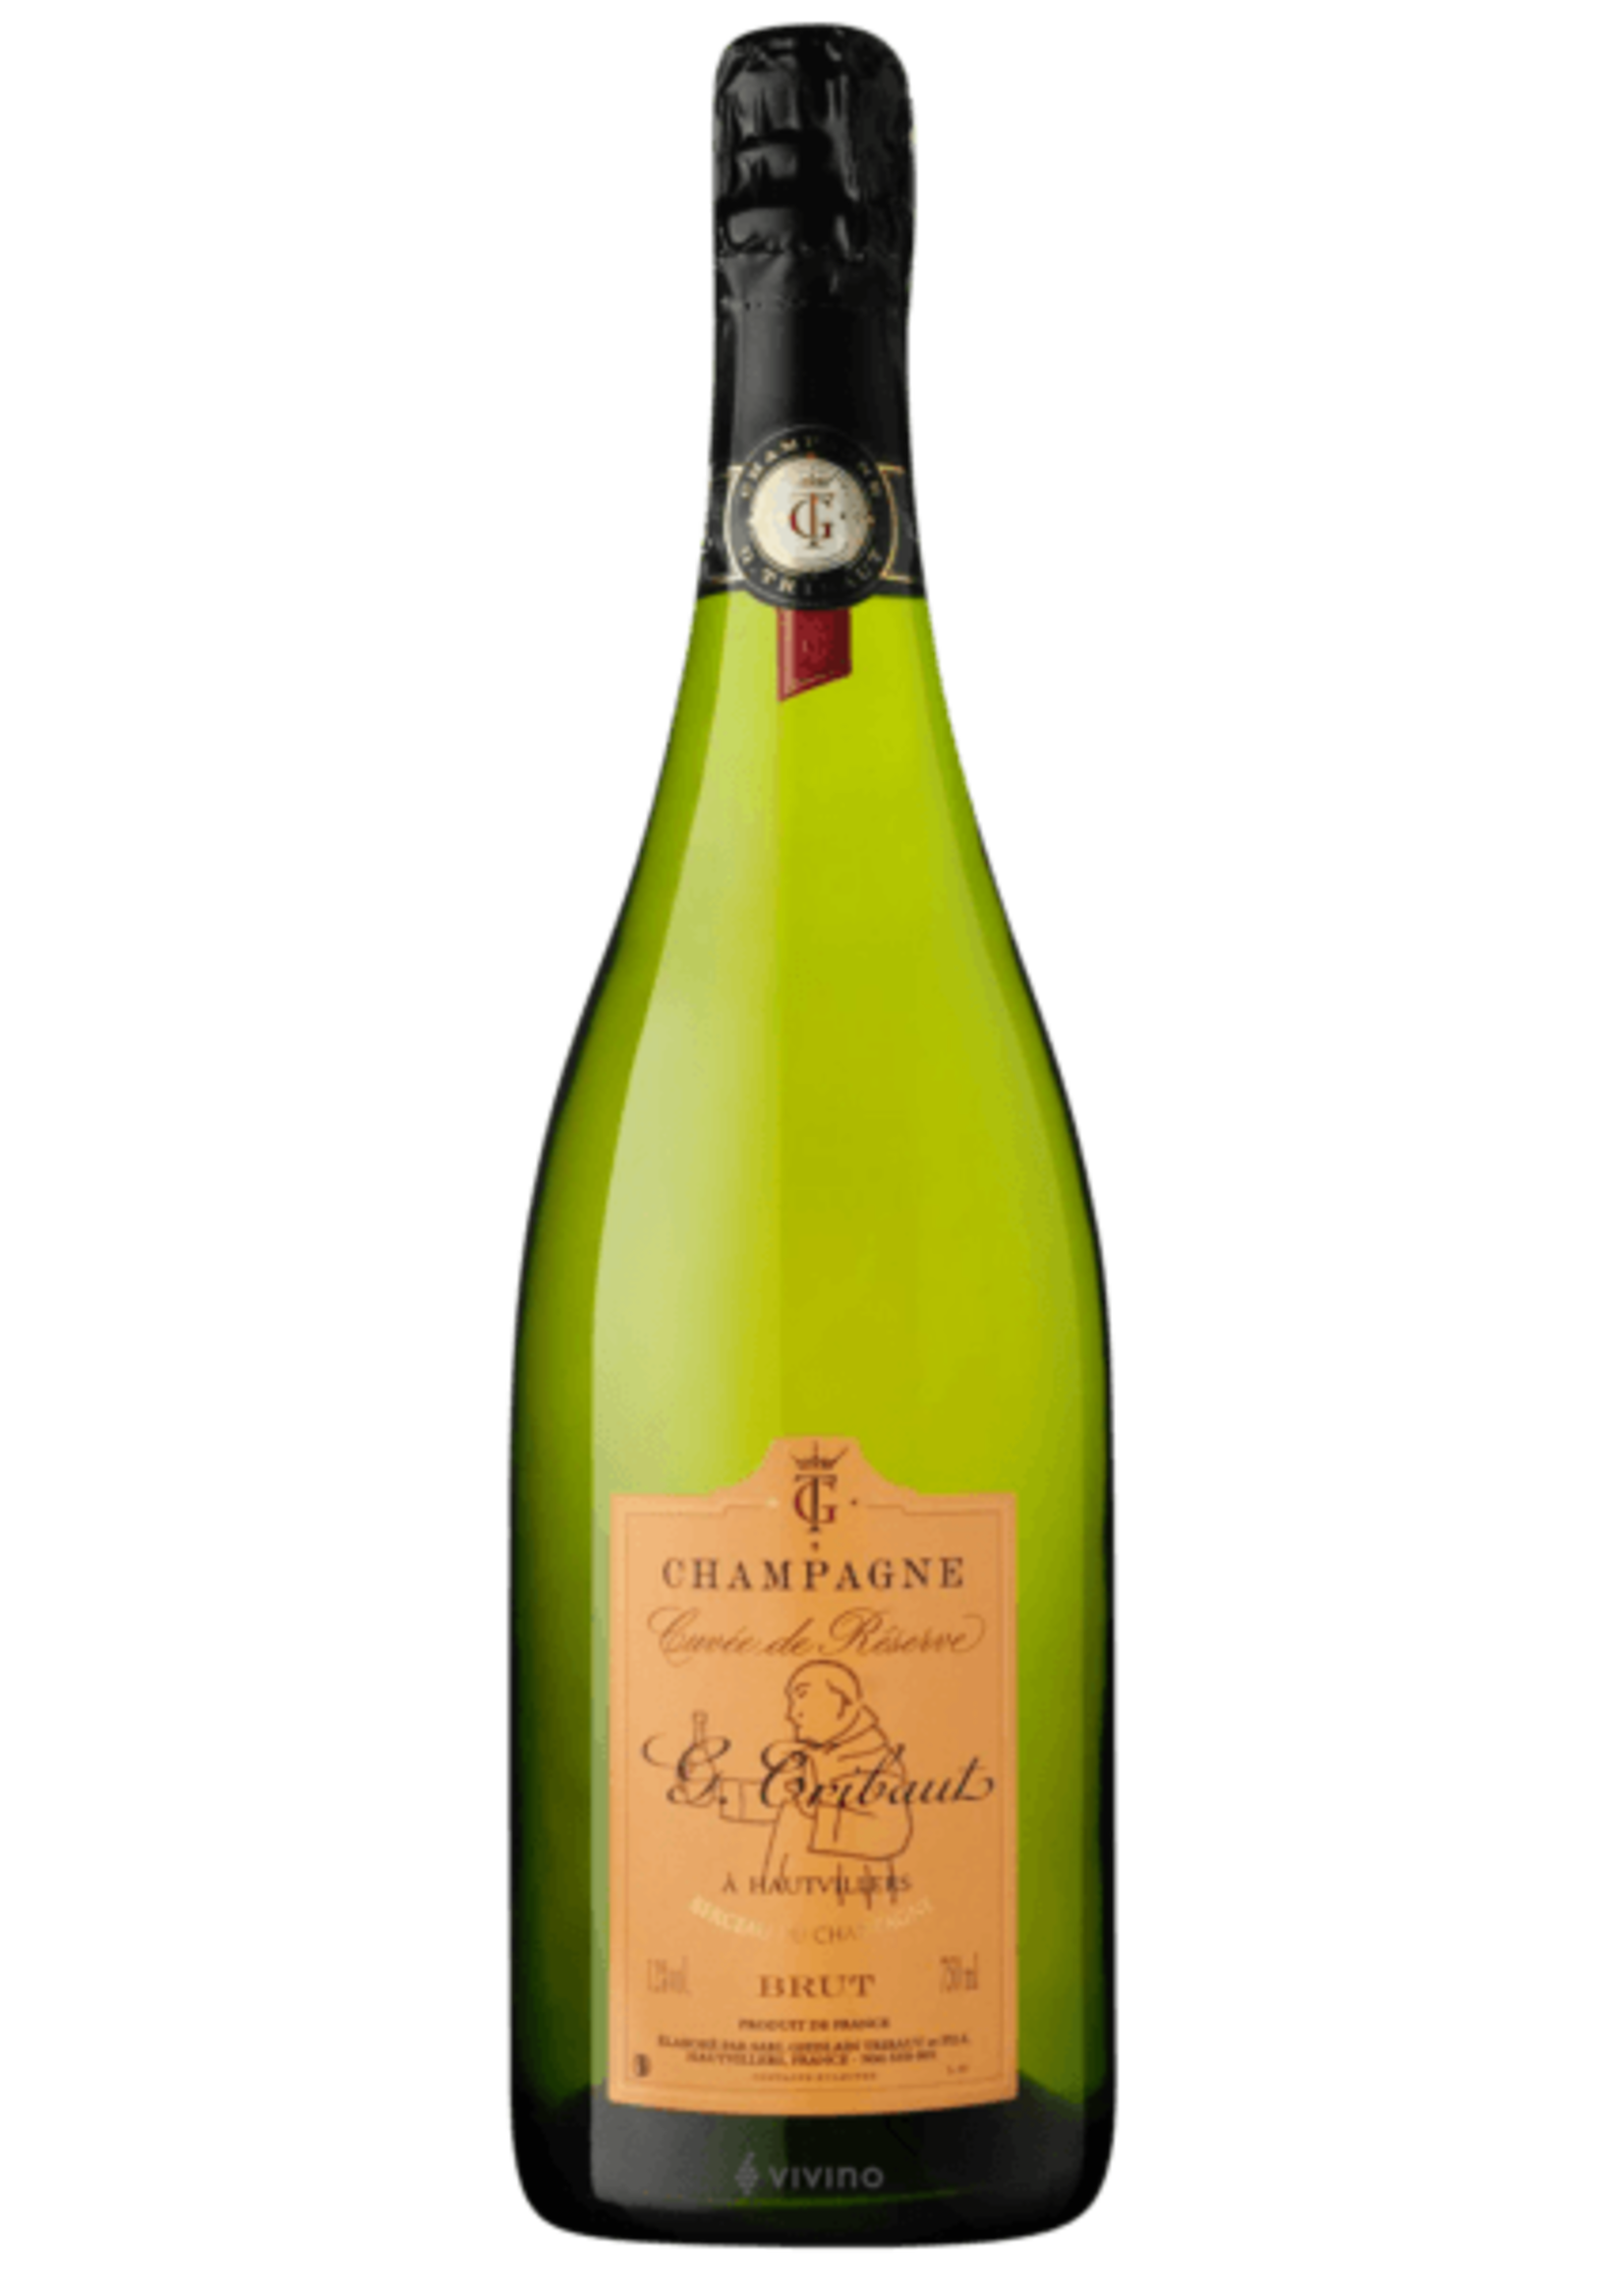 Champagne G. Tribaut Champagne G. Tribaut / Champagne Brut Cuvee de Reserve / 750mL